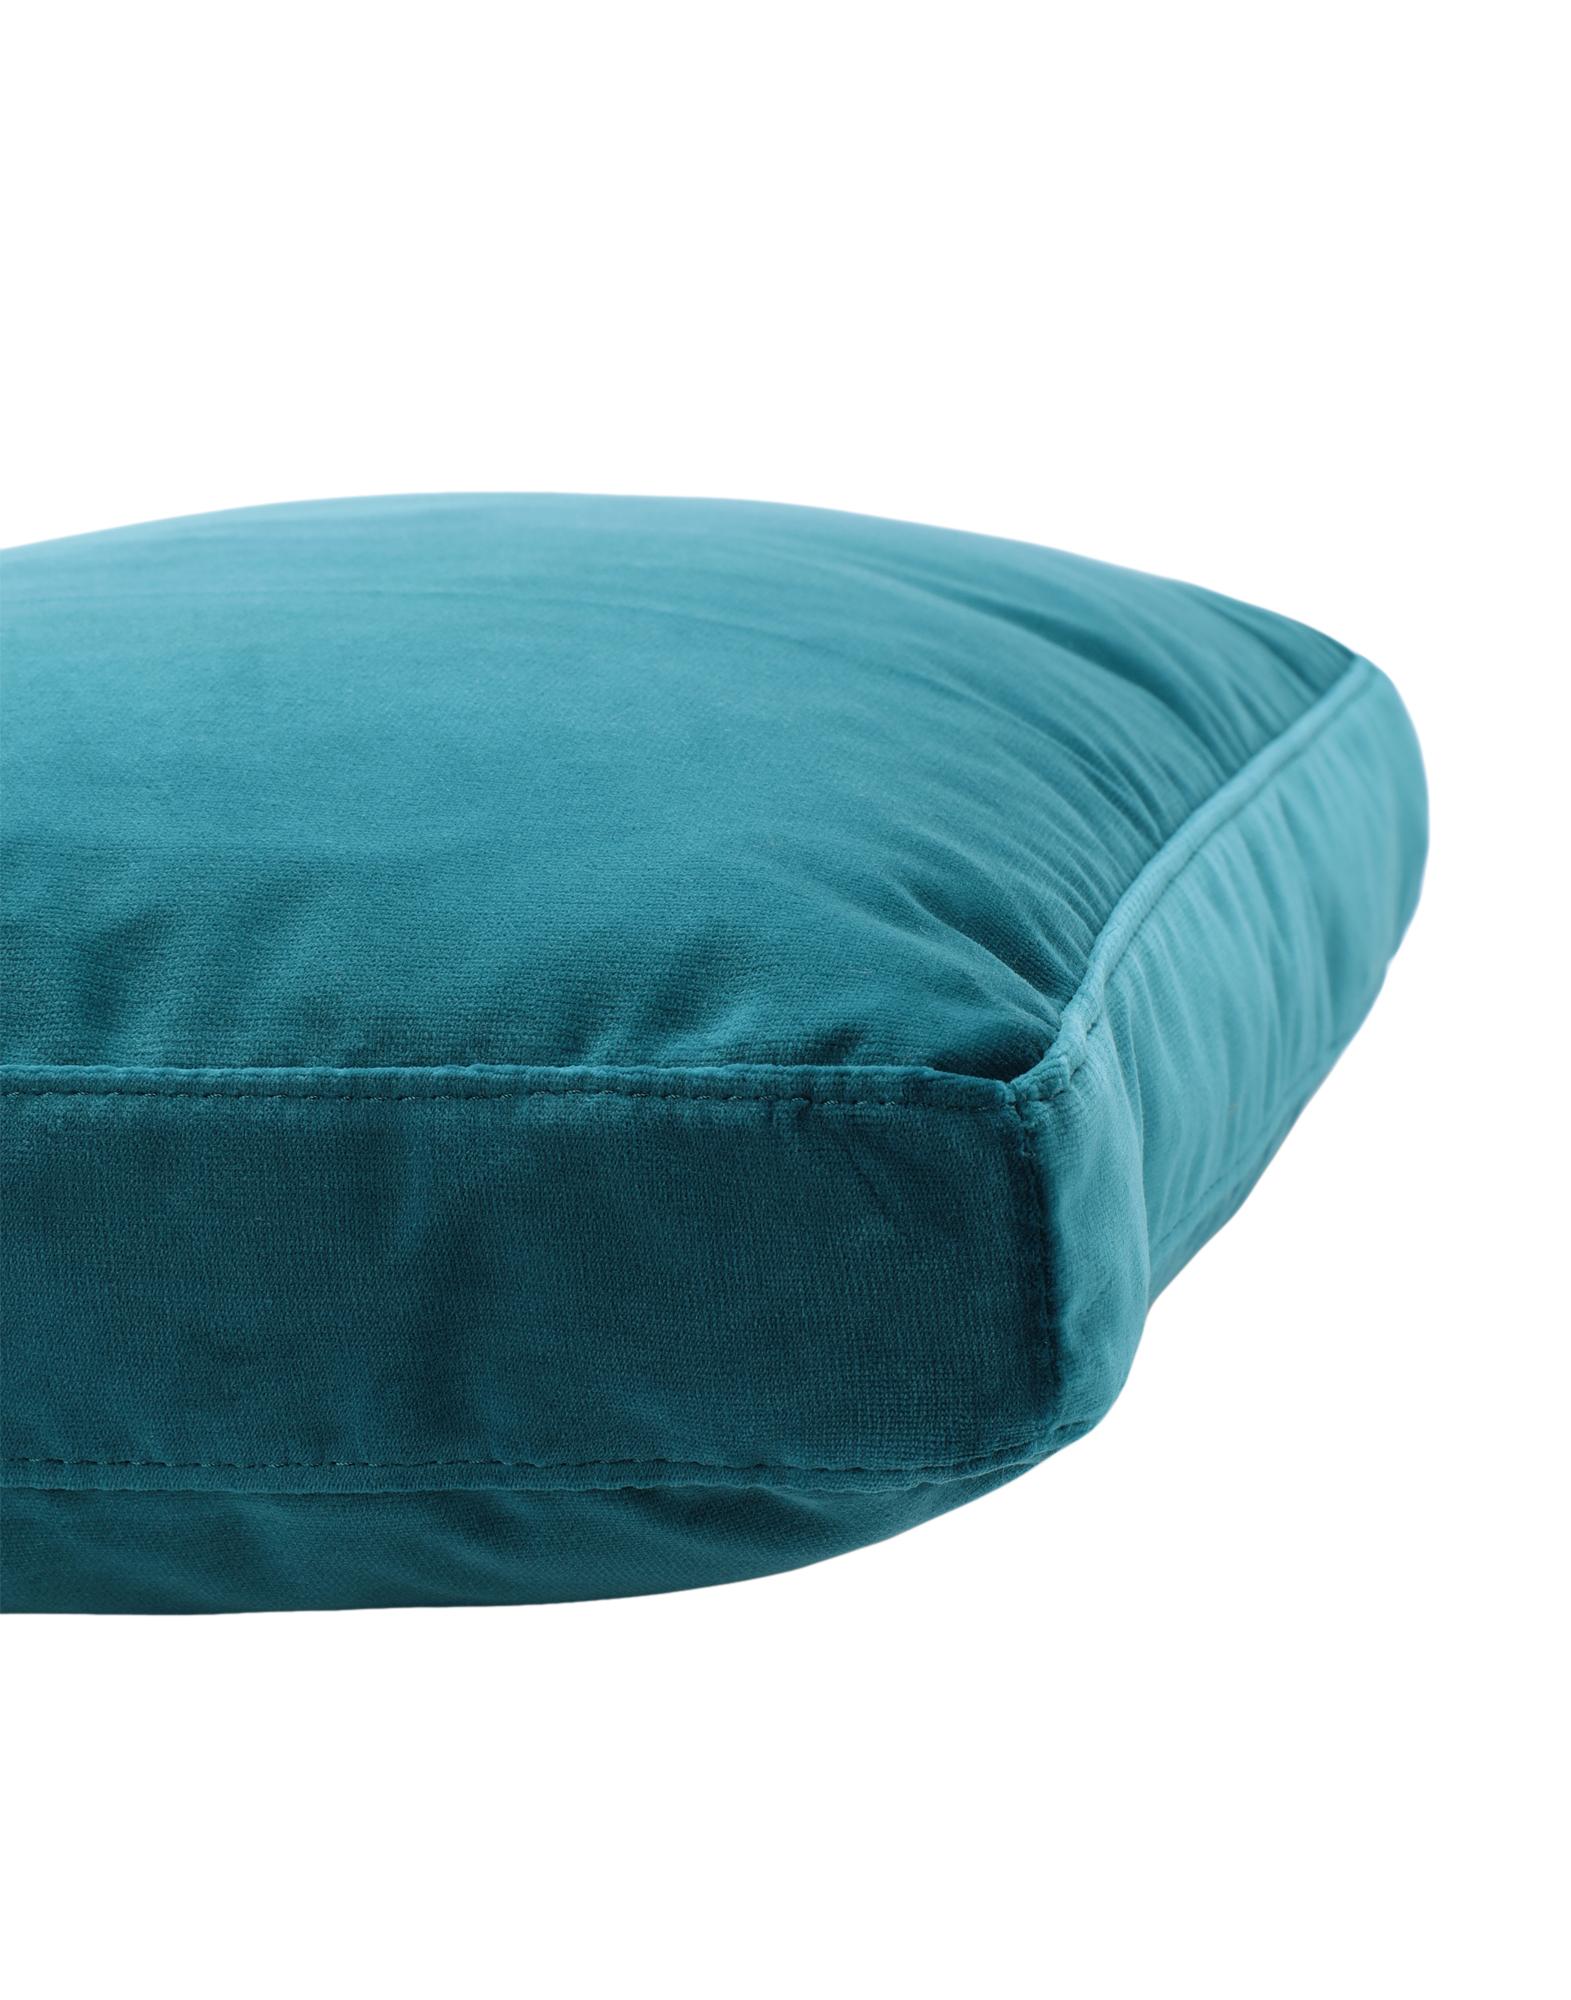 Kartell Cushions Largo in Velvet by Piero Lissoni For Sale 1